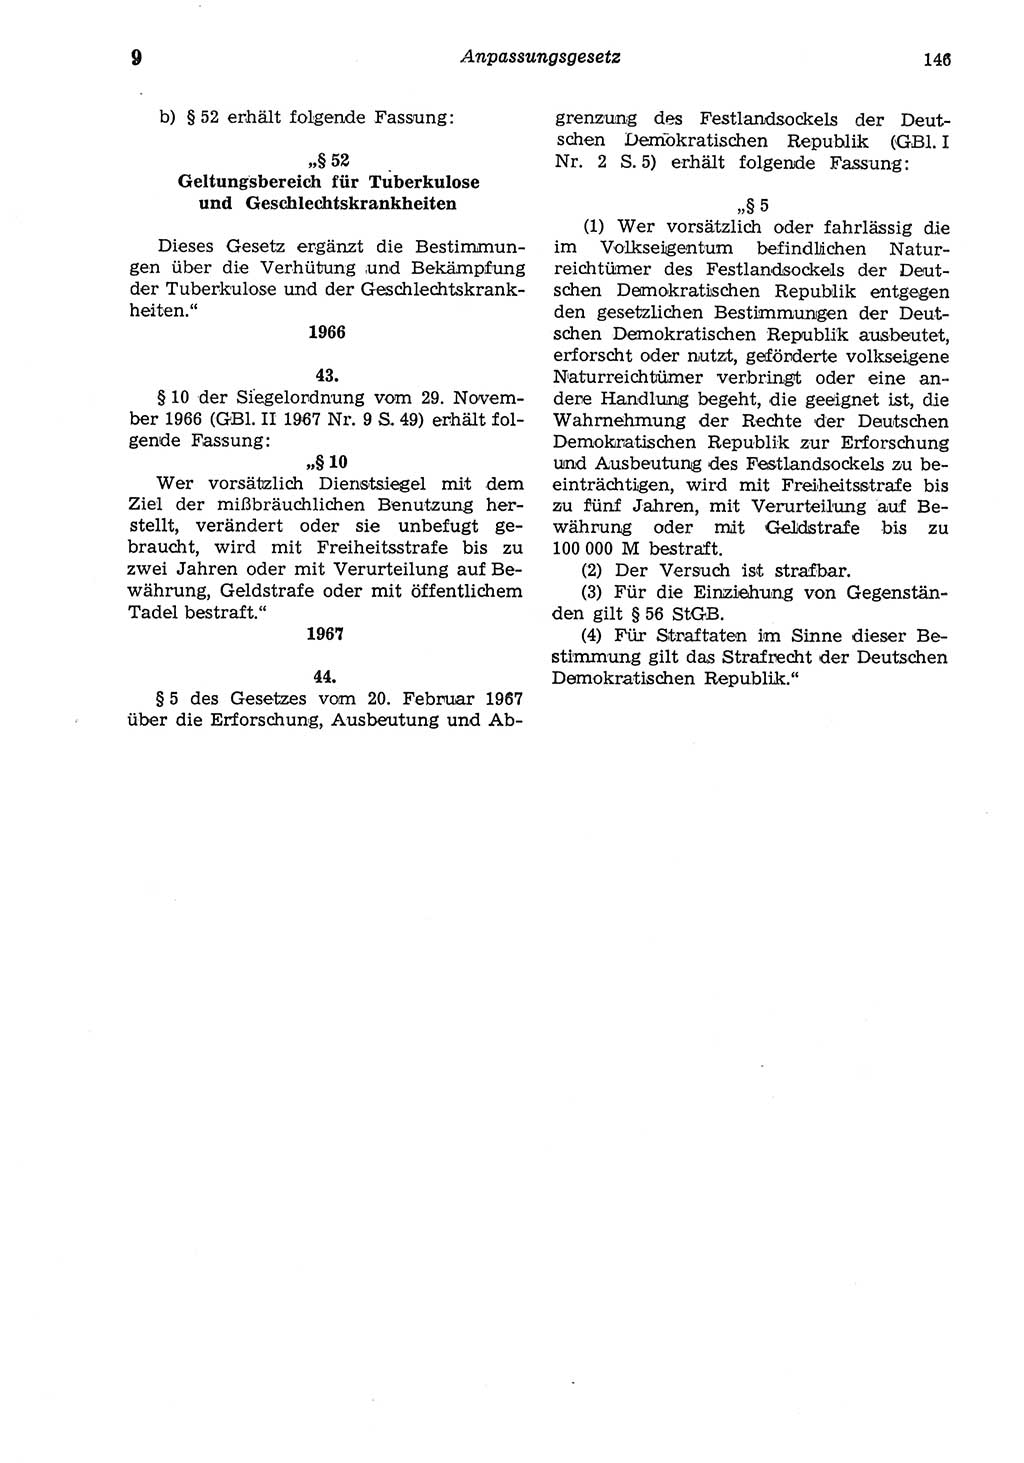 Strafgesetzbuch (StGB) der Deutschen Demokratischen Republik (DDR) und angrenzende Gesetze und Bestimmungen 1975, Seite 146 (StGB DDR Ges. Best. 1975, S. 146)